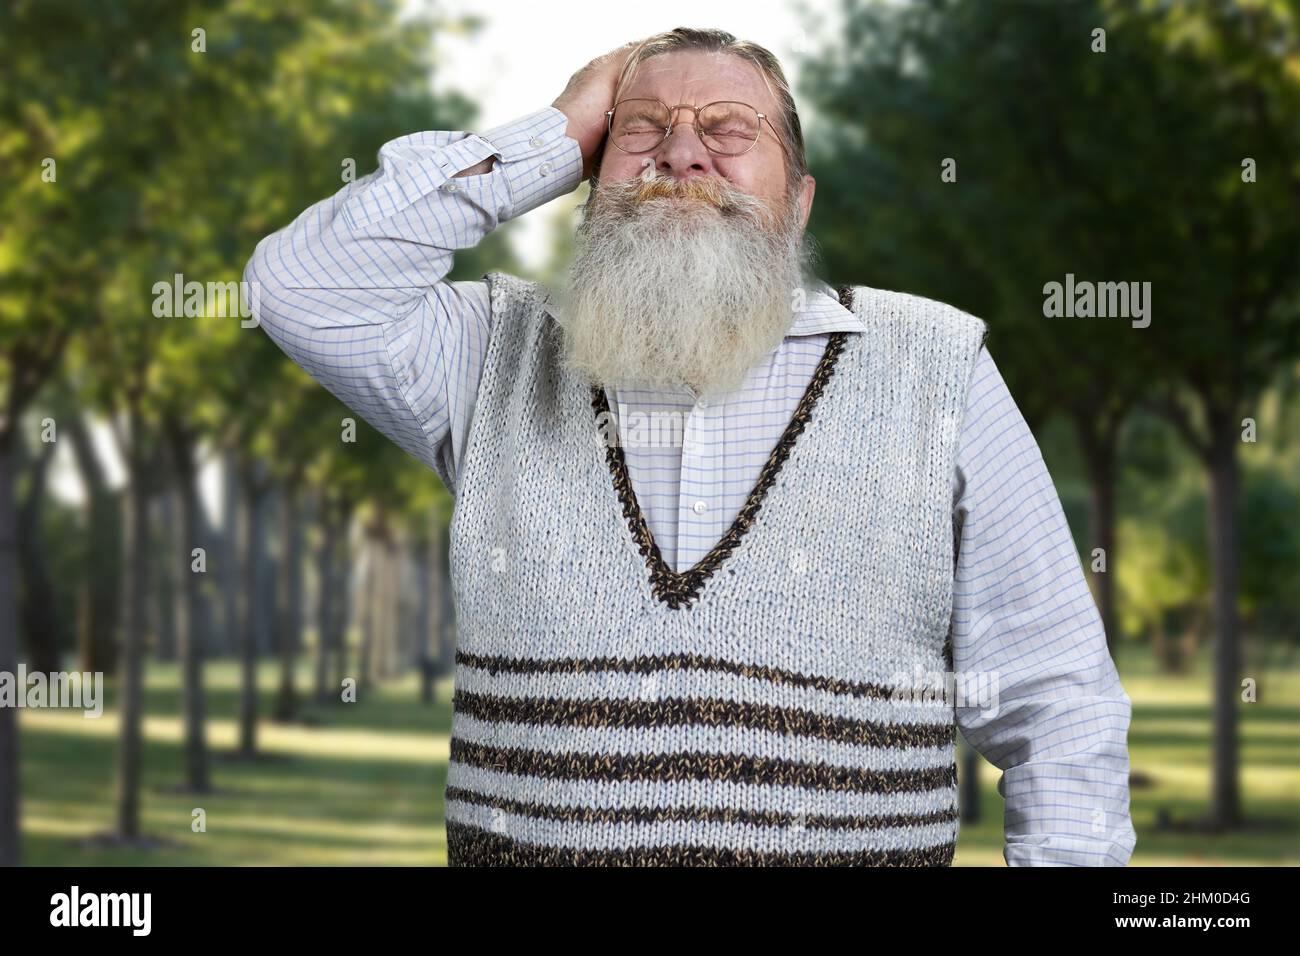 Un Hombre Con Barba Y Gafas De Sol Parado En La Nieve. Fotos, retratos,  imágenes y fotografía de archivo libres de derecho. Image 216378534